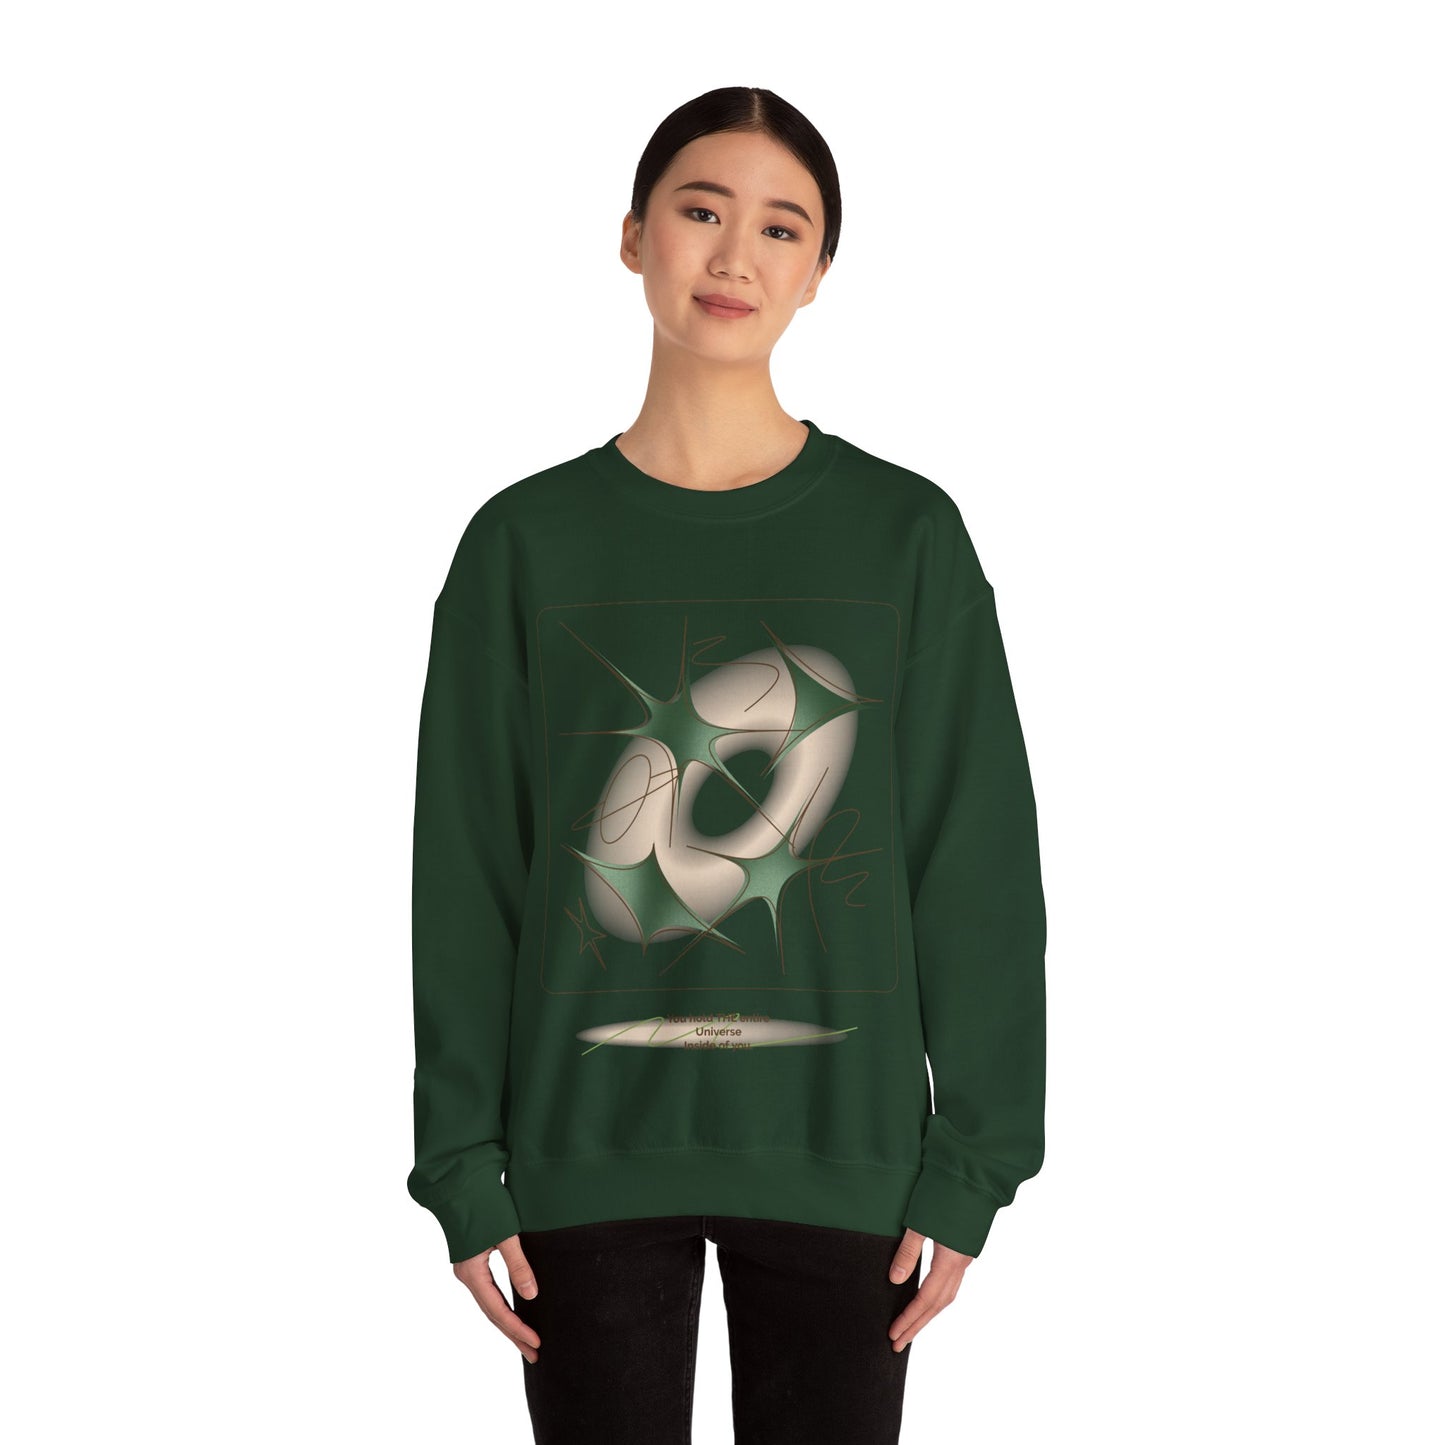 Universe In You: Y2k Sweatshirt